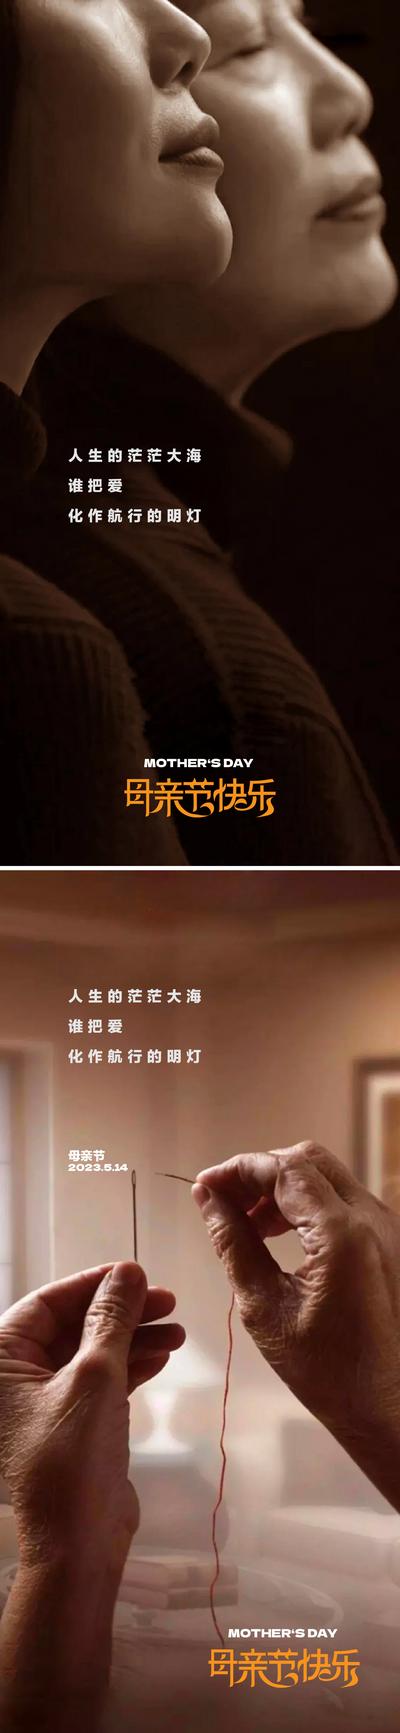 【南门网】广告 海报 节日 母亲节 温馨 系列 呵护